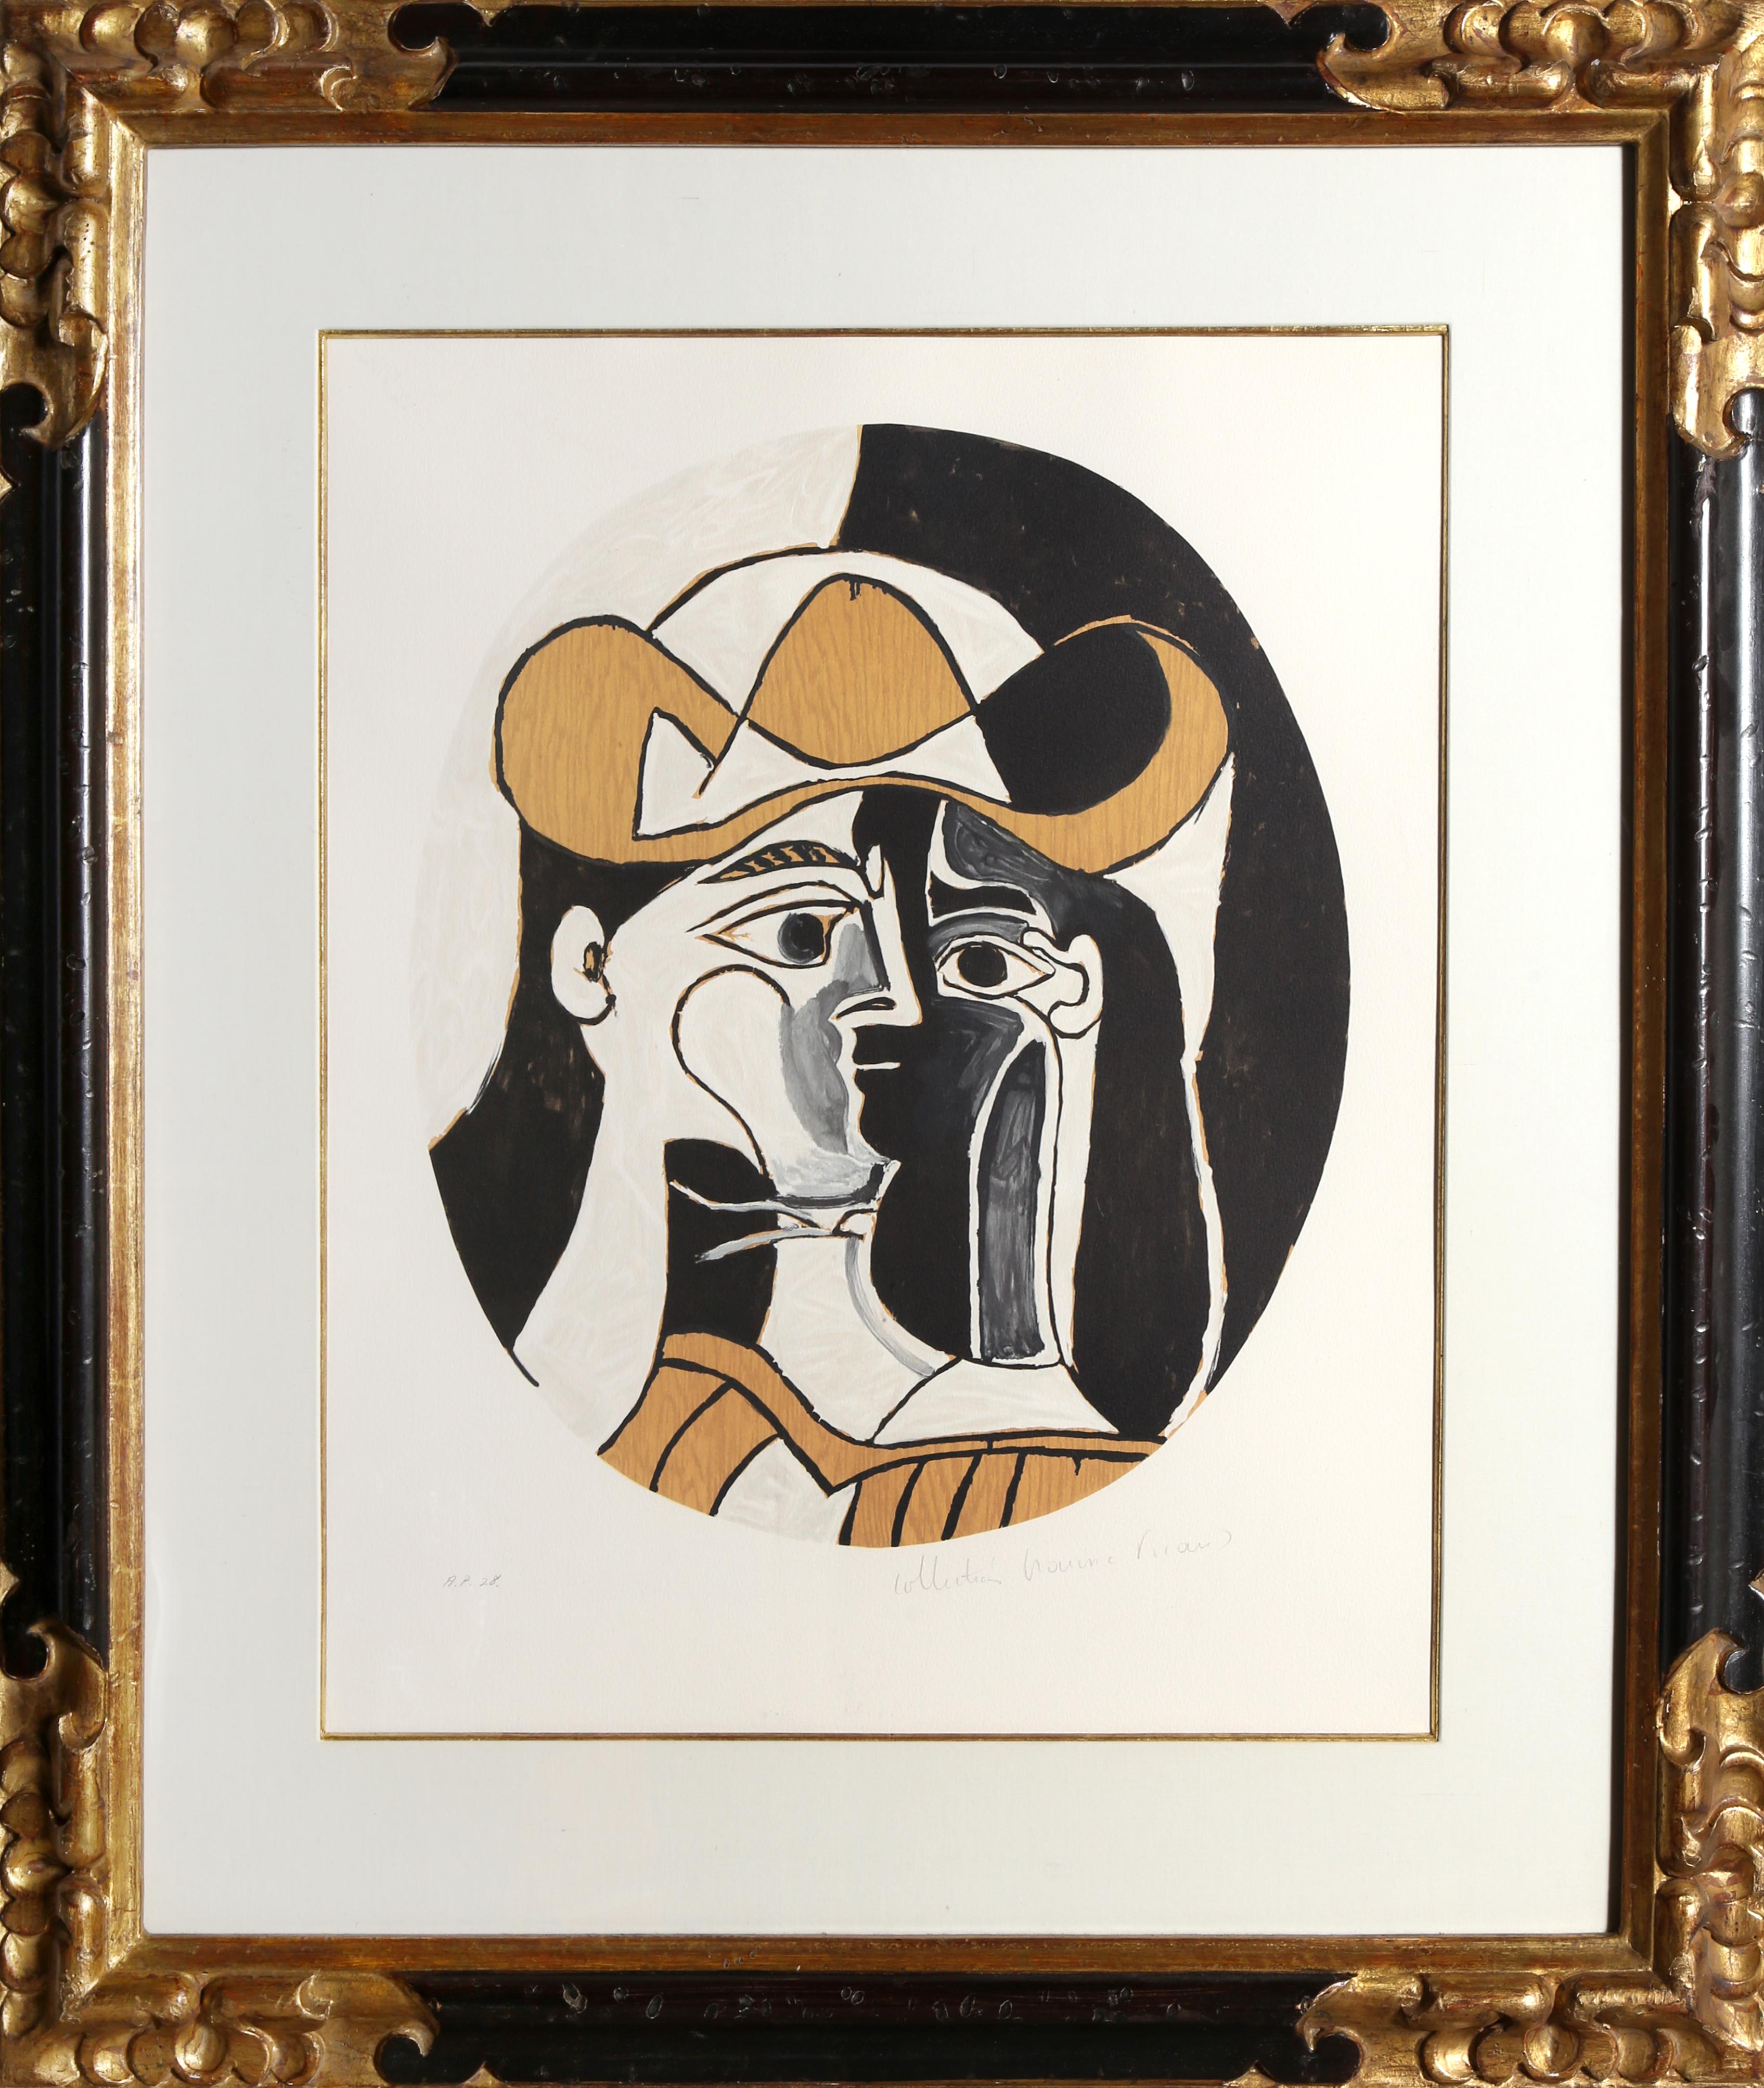 Eine Lithographie aus der Nachlasssammlung Marina Picasso nach dem Gemälde "Femme au Chapeau" von Pablo Picasso.  Das Originalgemälde wurde 1961 fertiggestellt. In den 1970er Jahren, nach Picassos Tod, autorisierte Marina Picasso, seine Enkelin, die